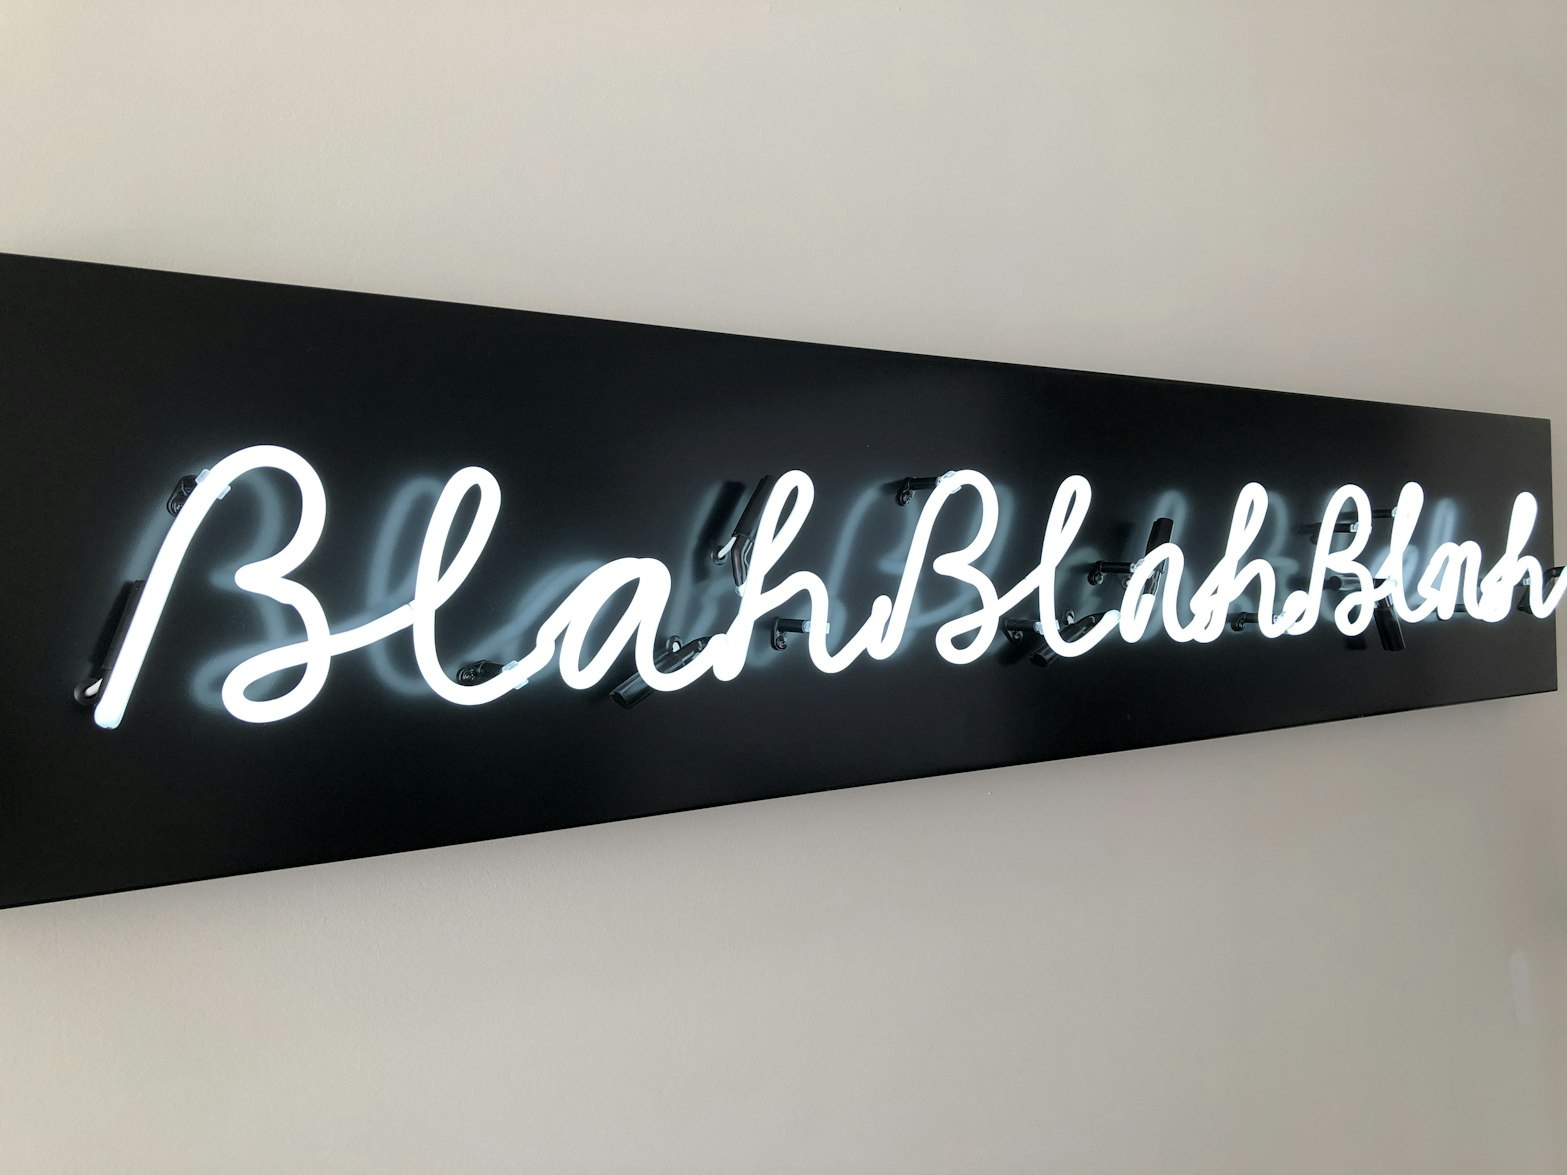 Black neon sign that reads "Blah blah blah" 